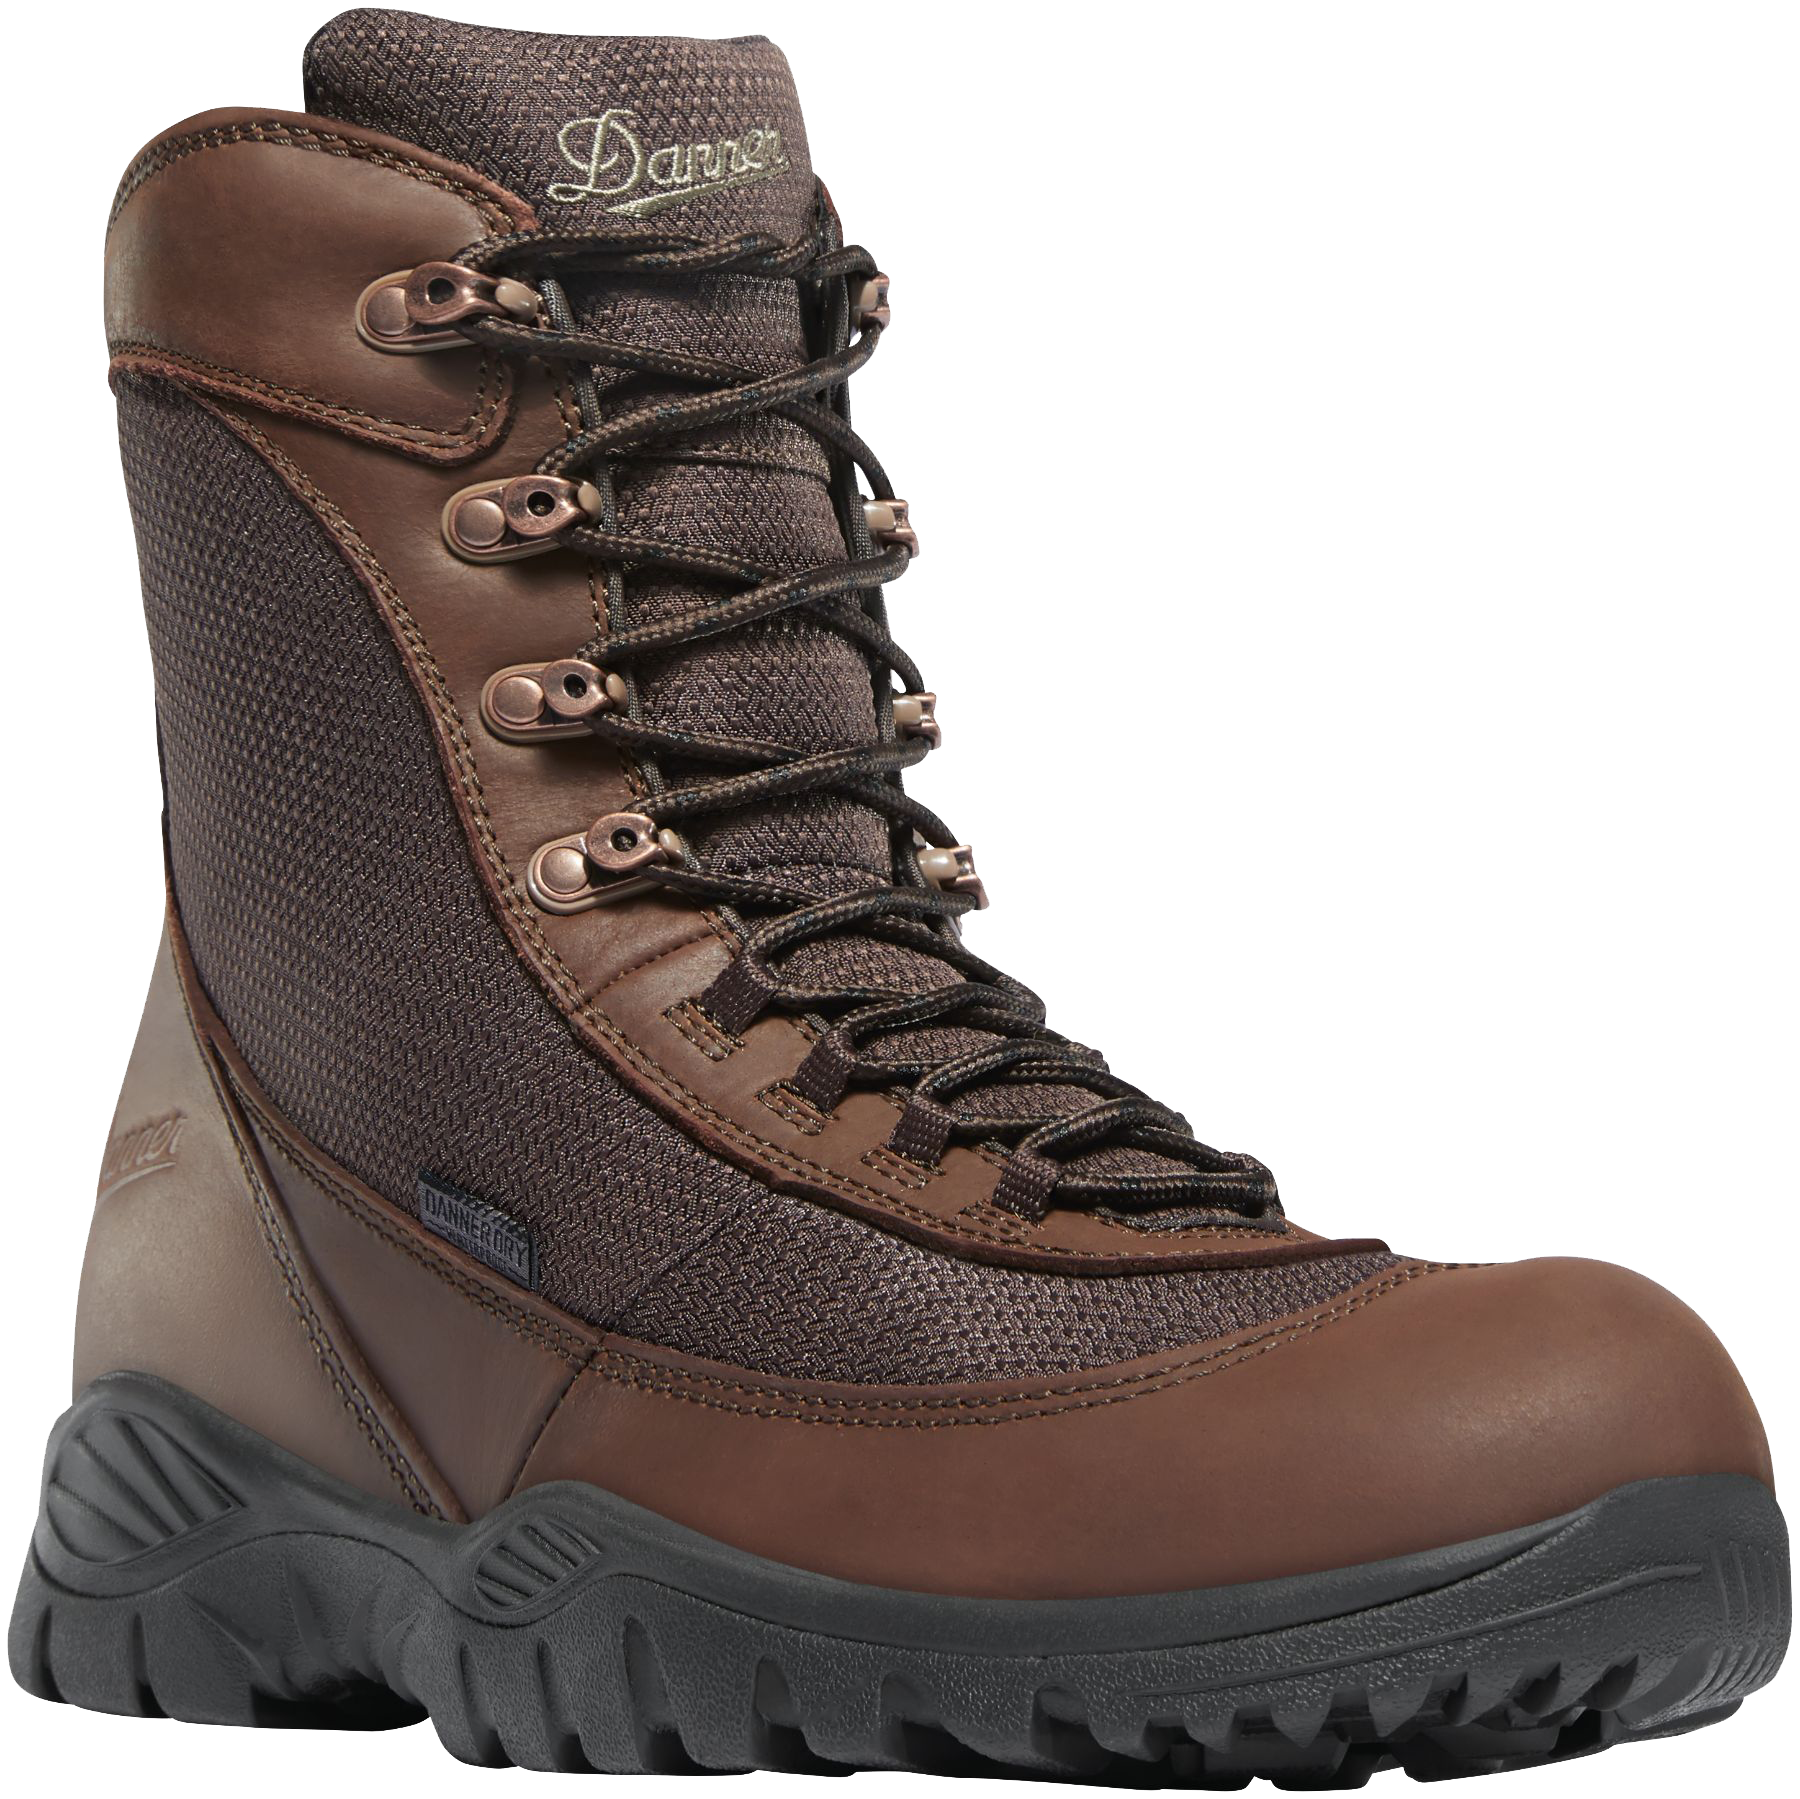 Danner Men's Element 8in Waterproof Hunting Boots - Brown 13 -  47130-13EE